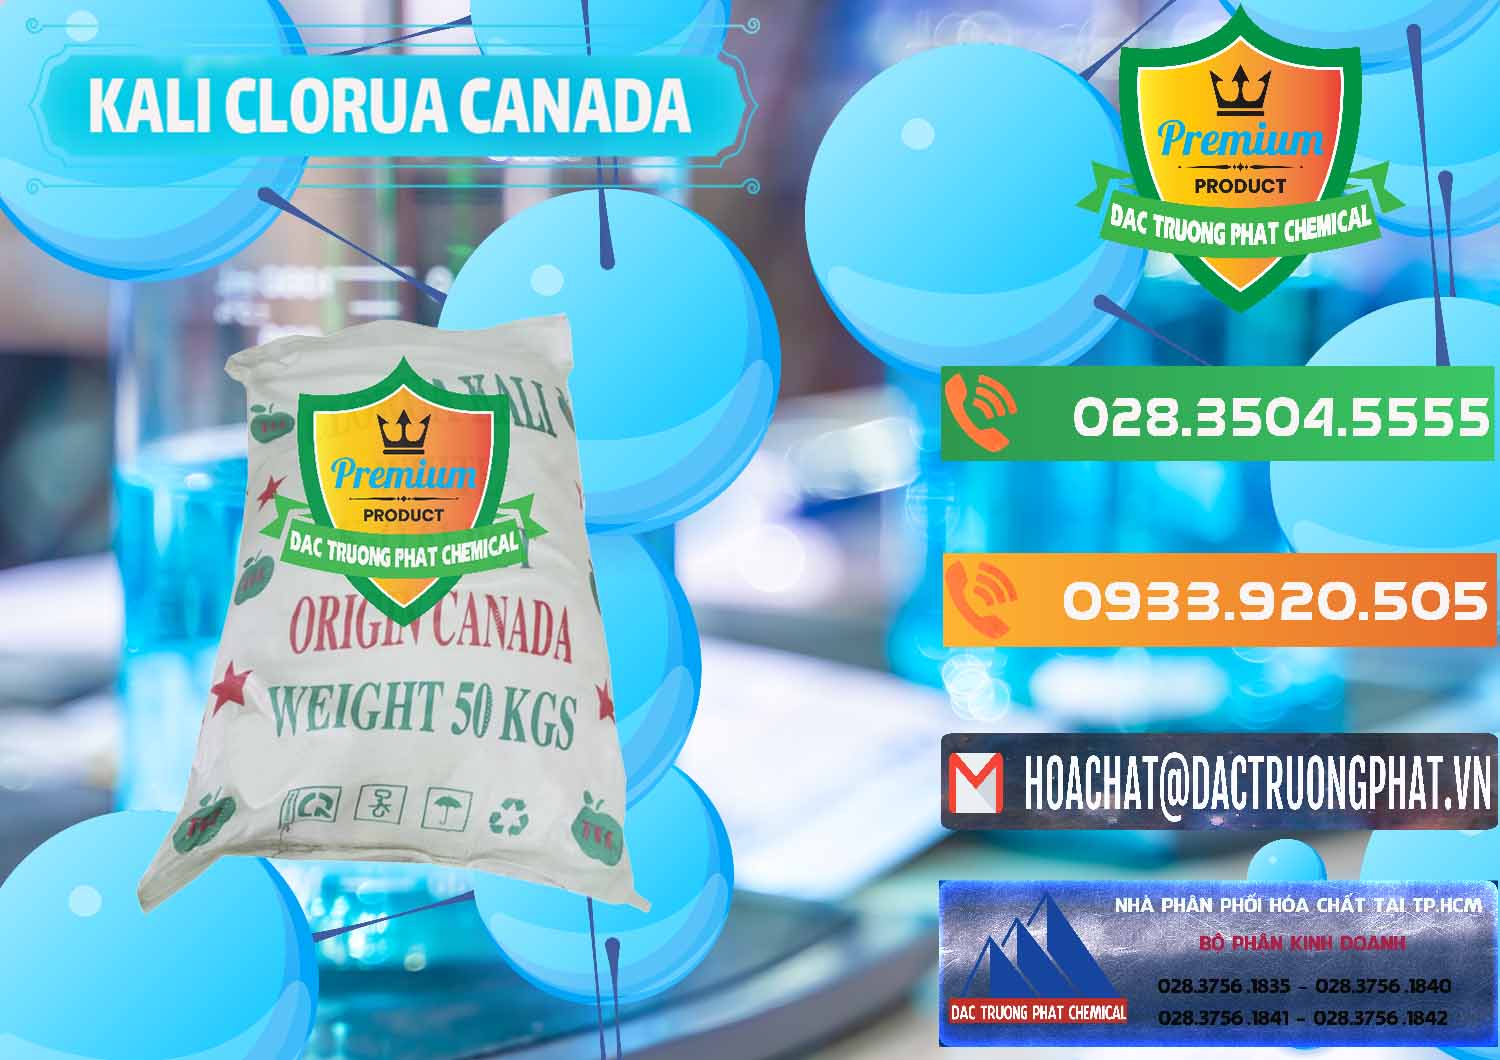 Bán KCL – Kali Clorua Trắng Canada - 0437 - Cty phân phối và cung ứng hóa chất tại TP.HCM - hoachatxulynuoc.com.vn